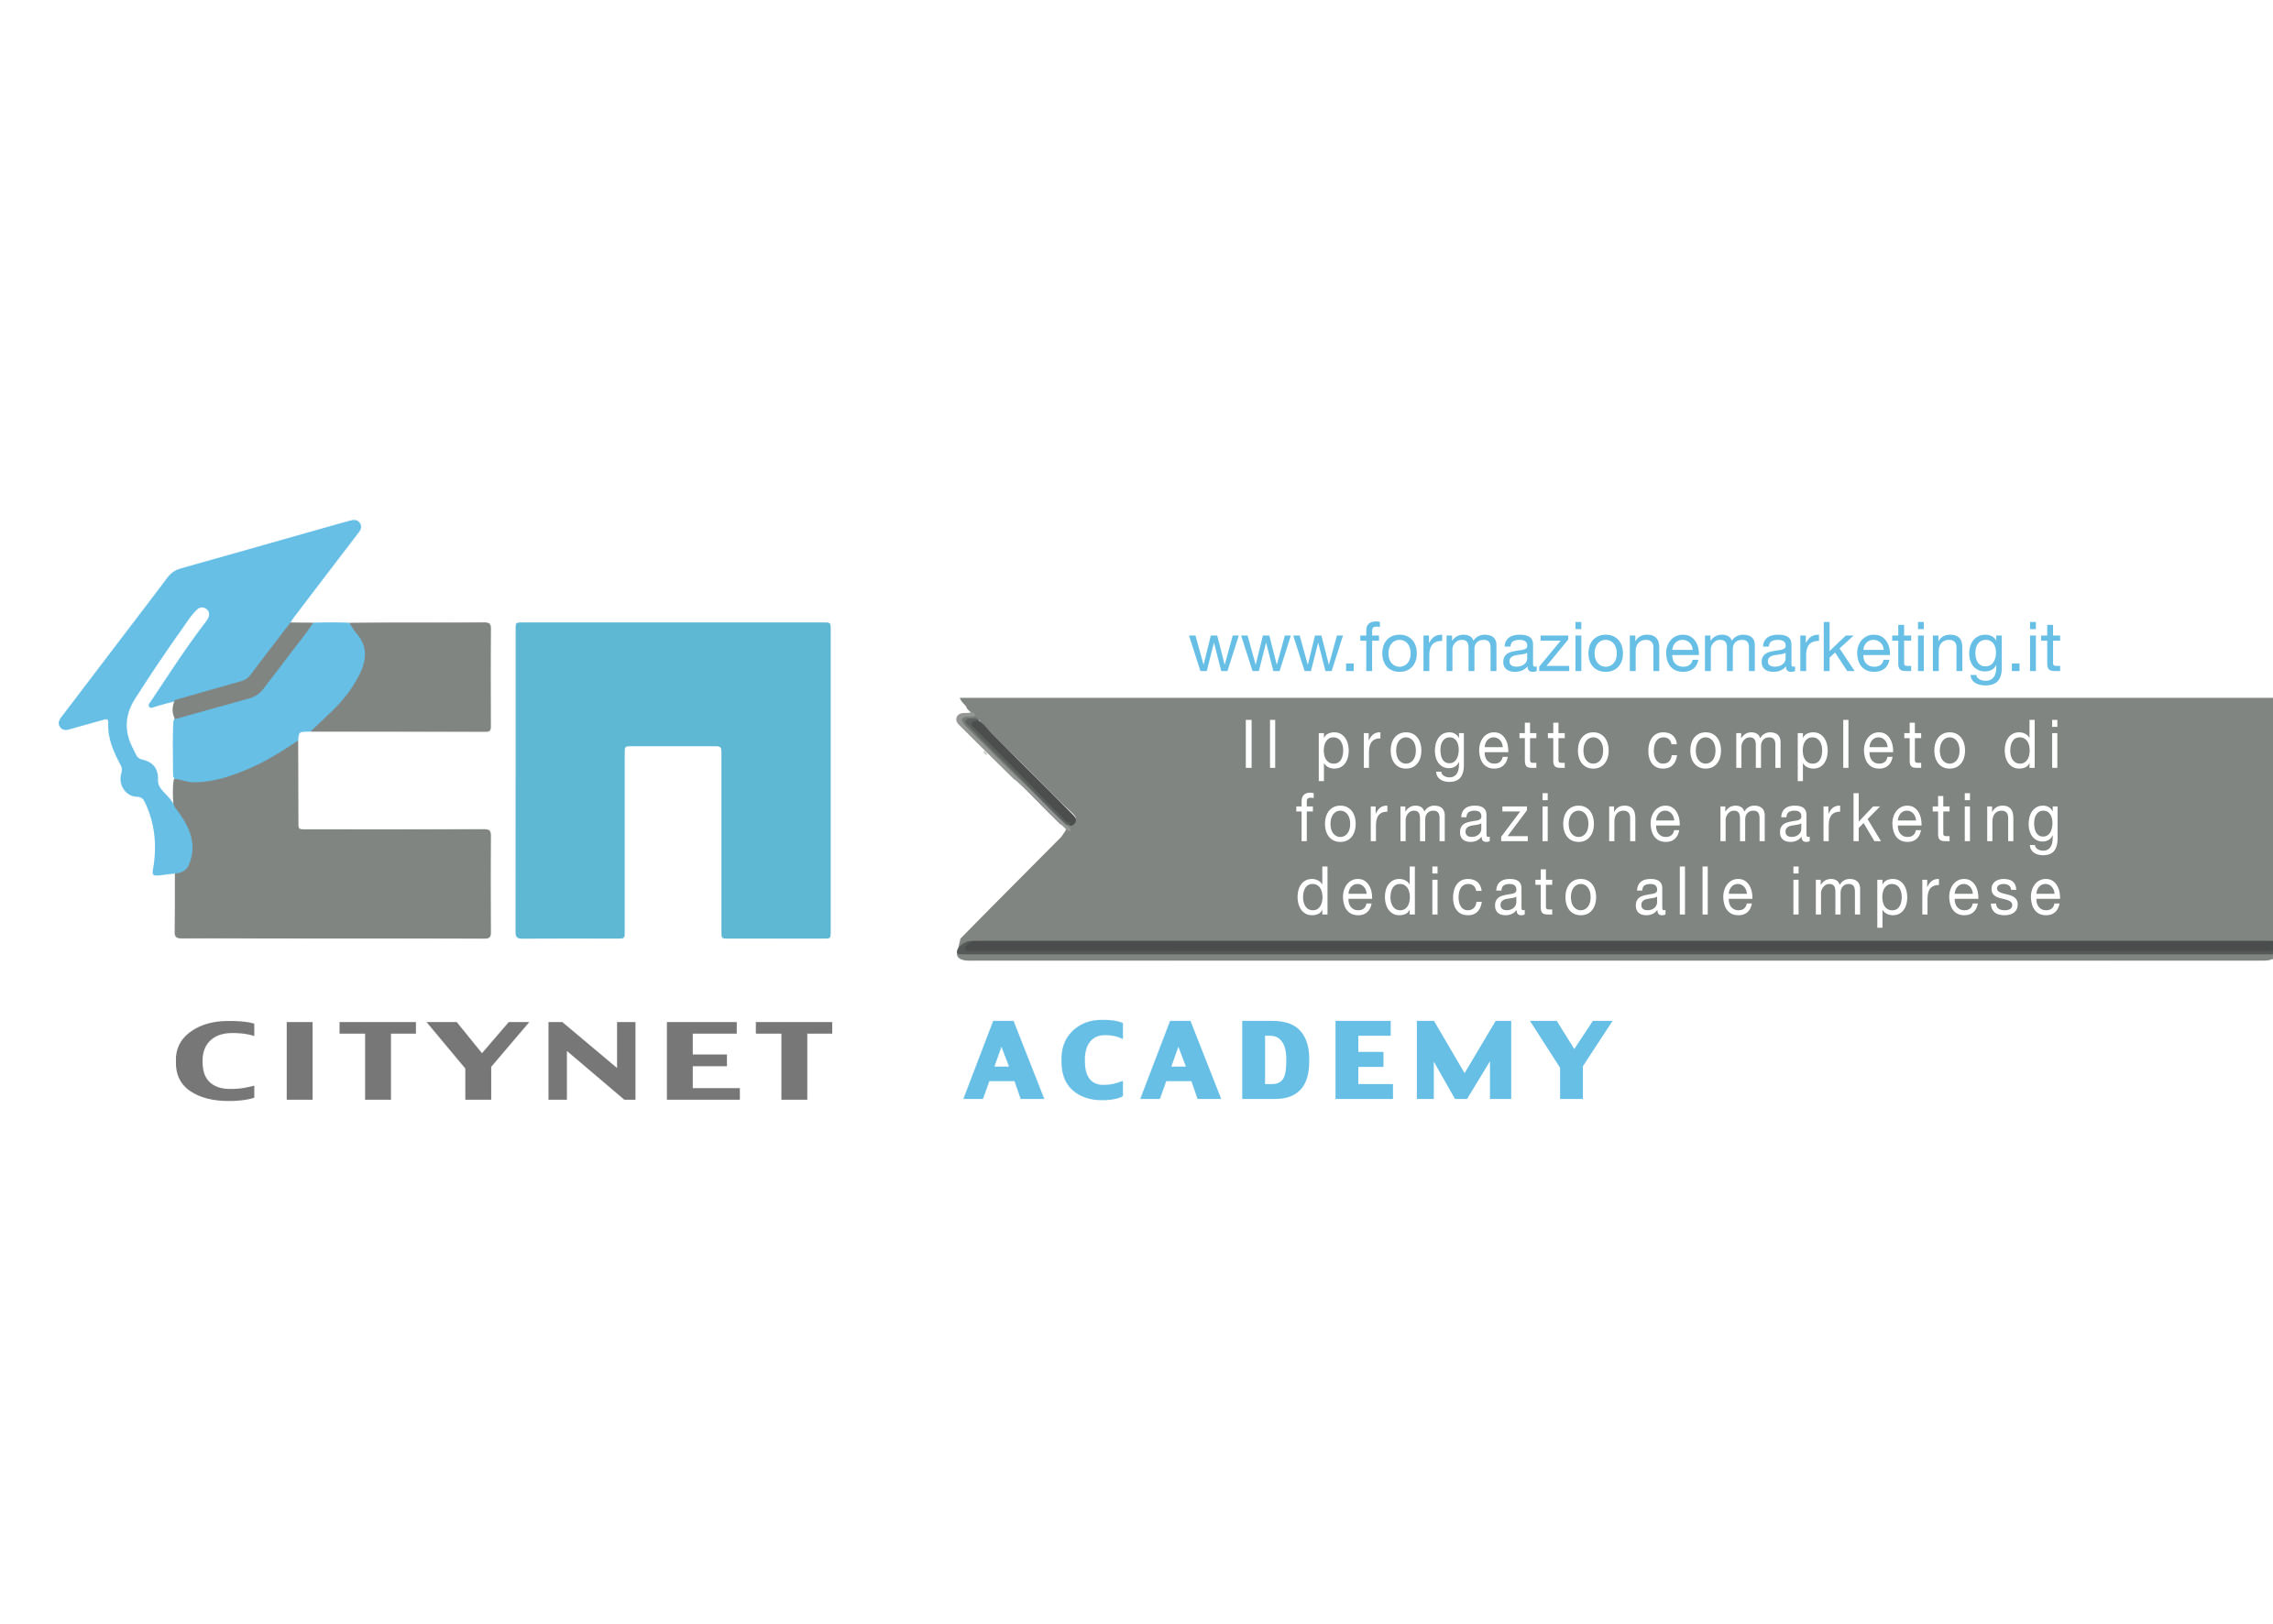 Citynet Academy - Siamo un Ente di Formazione accreditato dalla Regione Marche